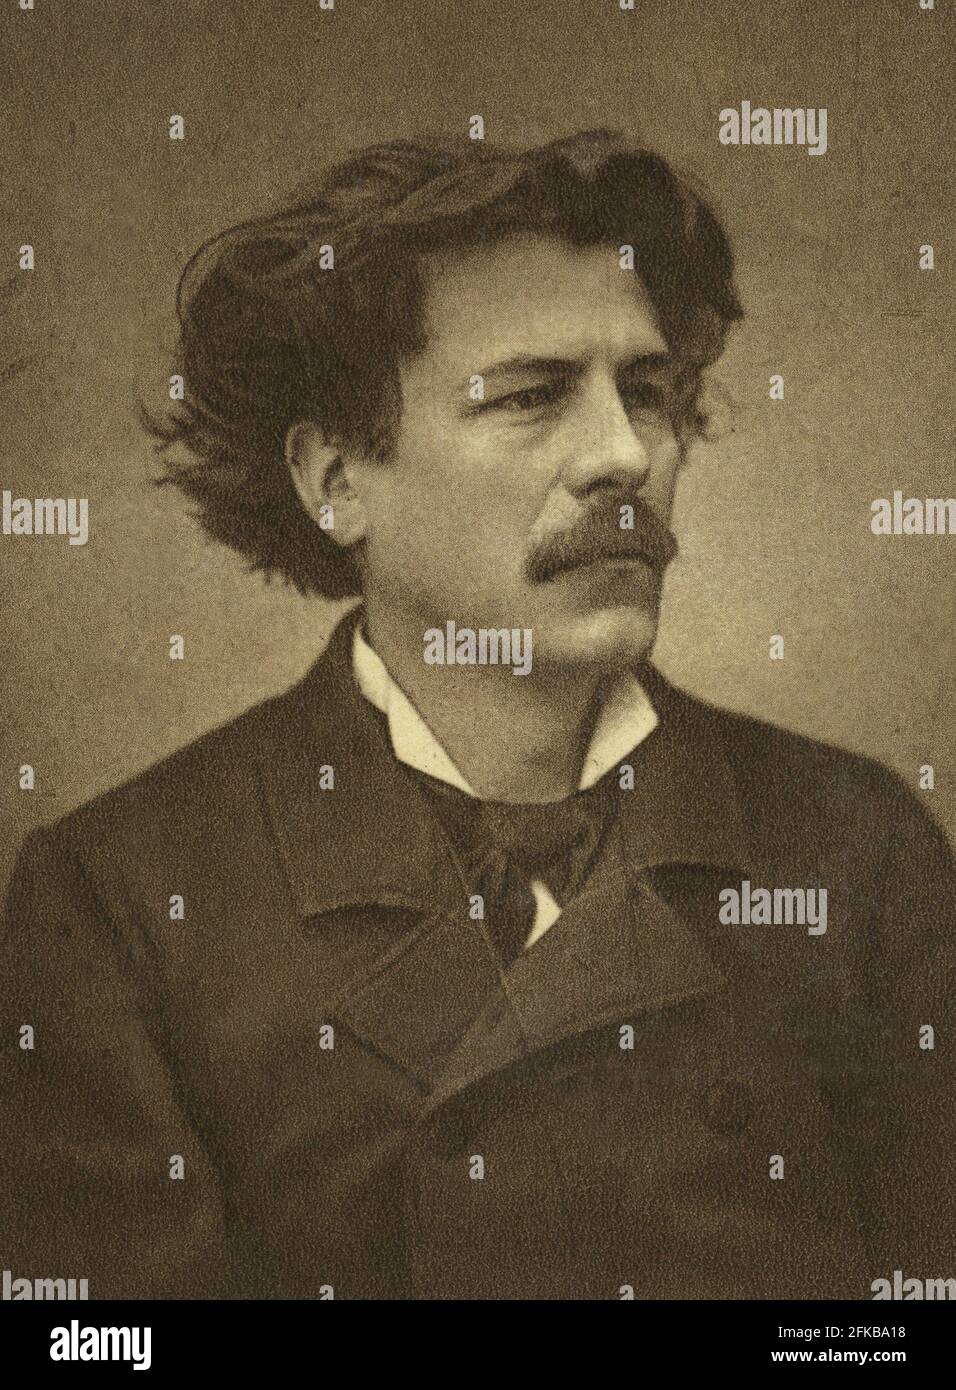 Maurice Rollinat (1846-1903). Poeta figlio di Georges Sand, è noto per il poema 'Les Névroses'. Fotografia del 1888. Foto Stock